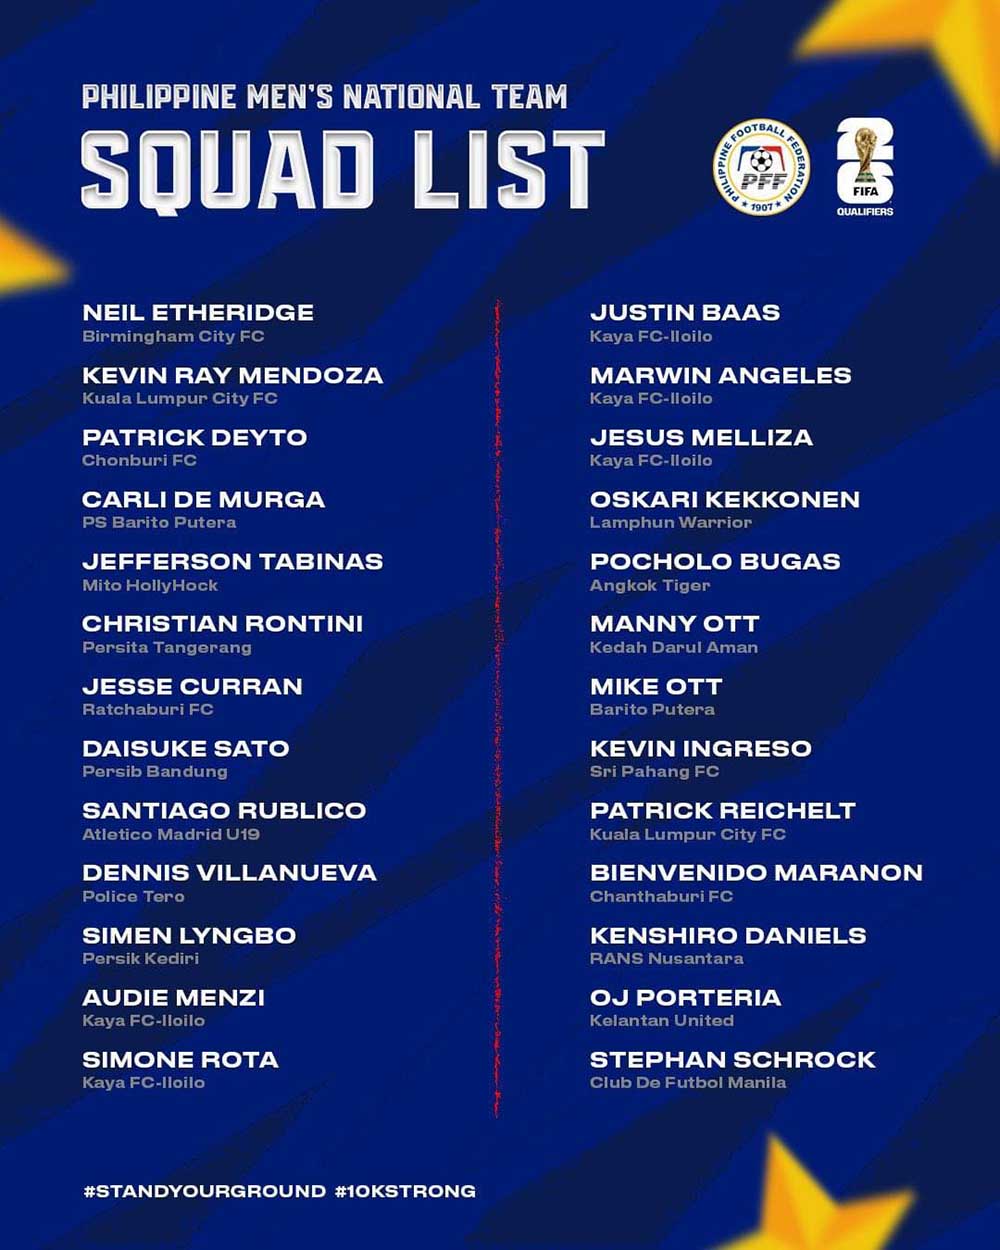 Danh sách đội tuyển Philippines chuẩn bị cho vòng loại World Cup 2026. Ảnh: PFF